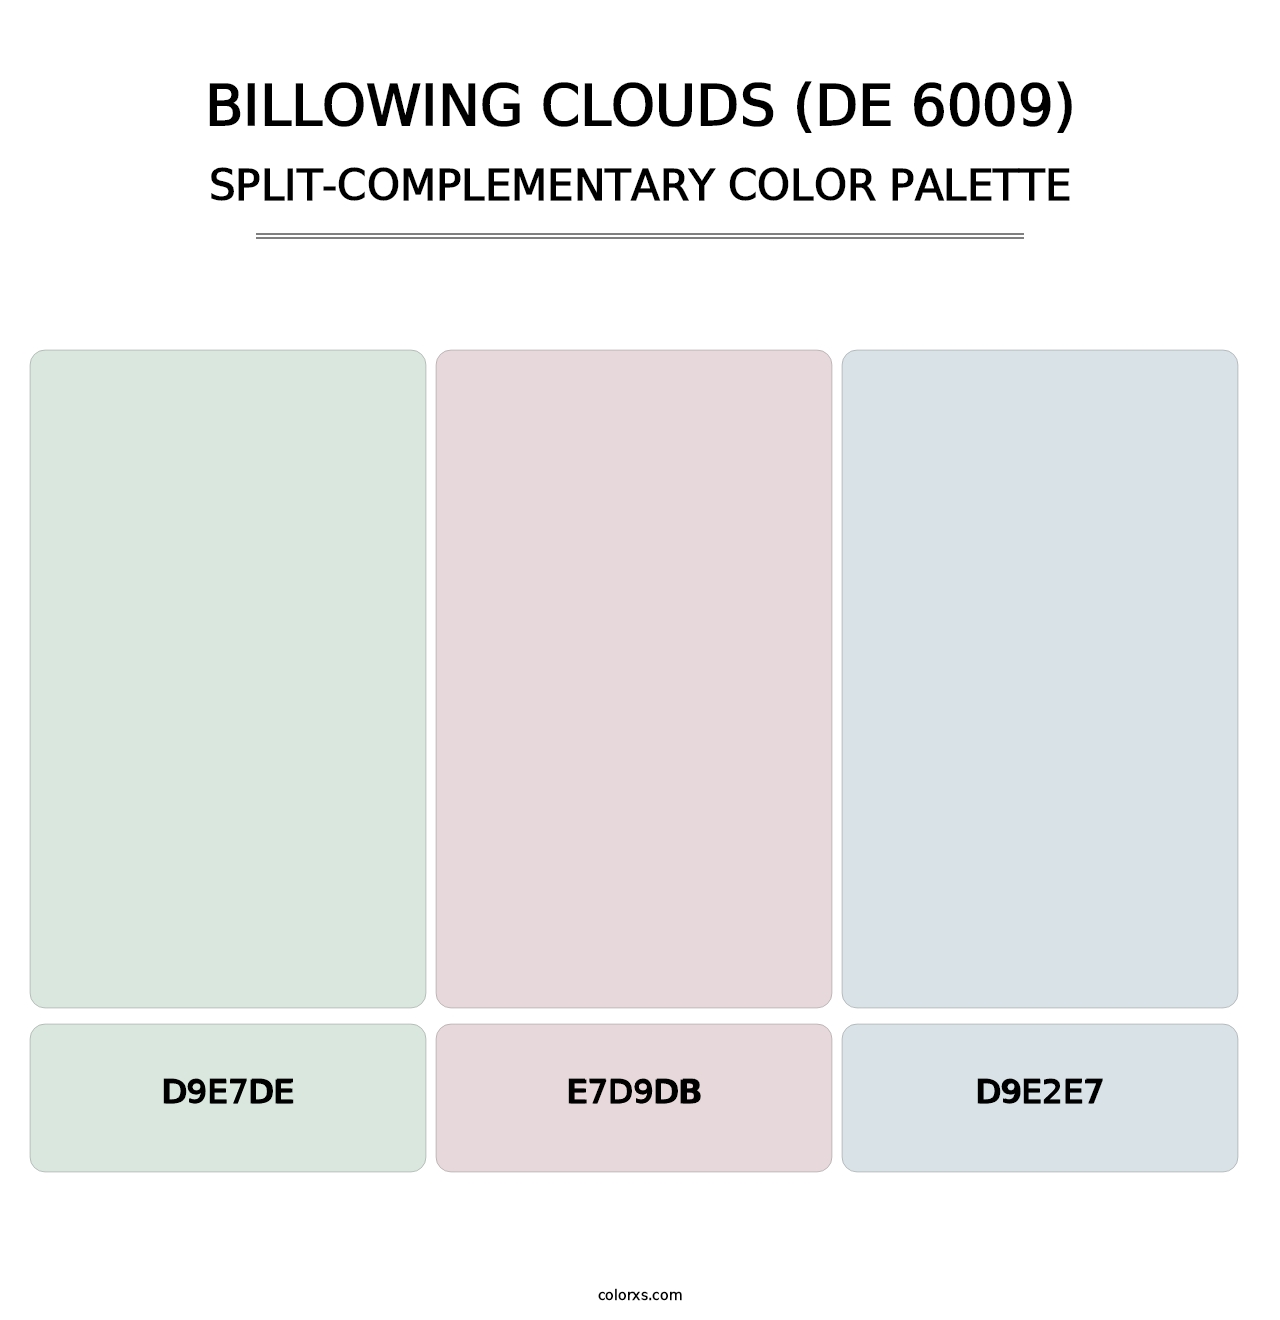 Billowing Clouds (DE 6009) - Split-Complementary Color Palette